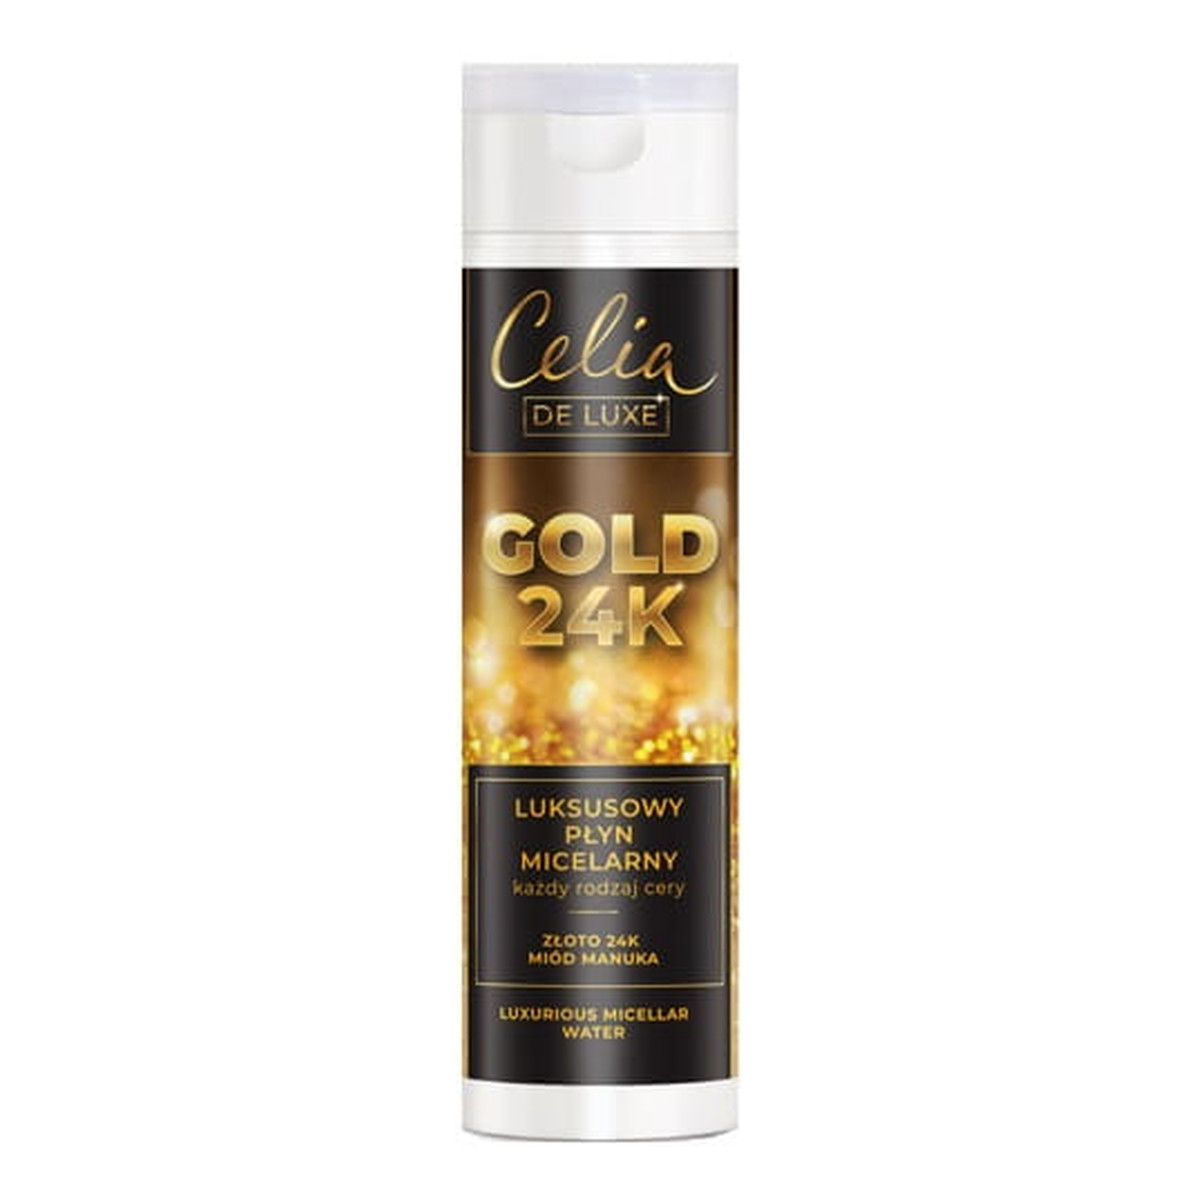 Celia De Luxe Luksusowy Płyn Micelarny do każdego rodzaju cery Gold 24K 200ml